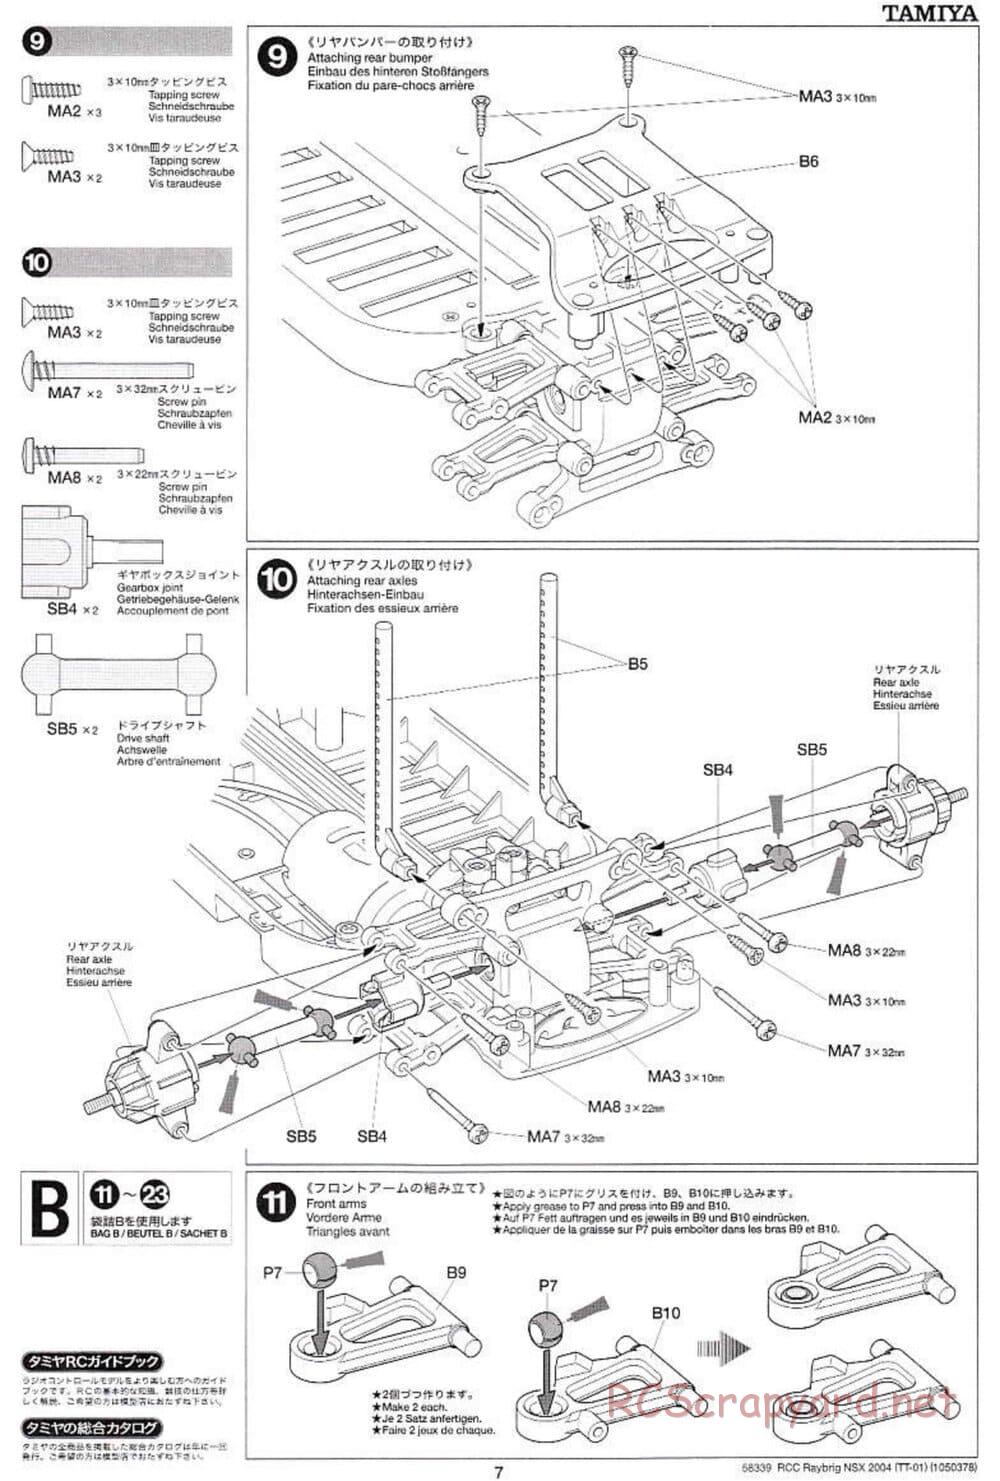 Tamiya - Raybrig NSX 2004 Chassis - Manual - Page 7